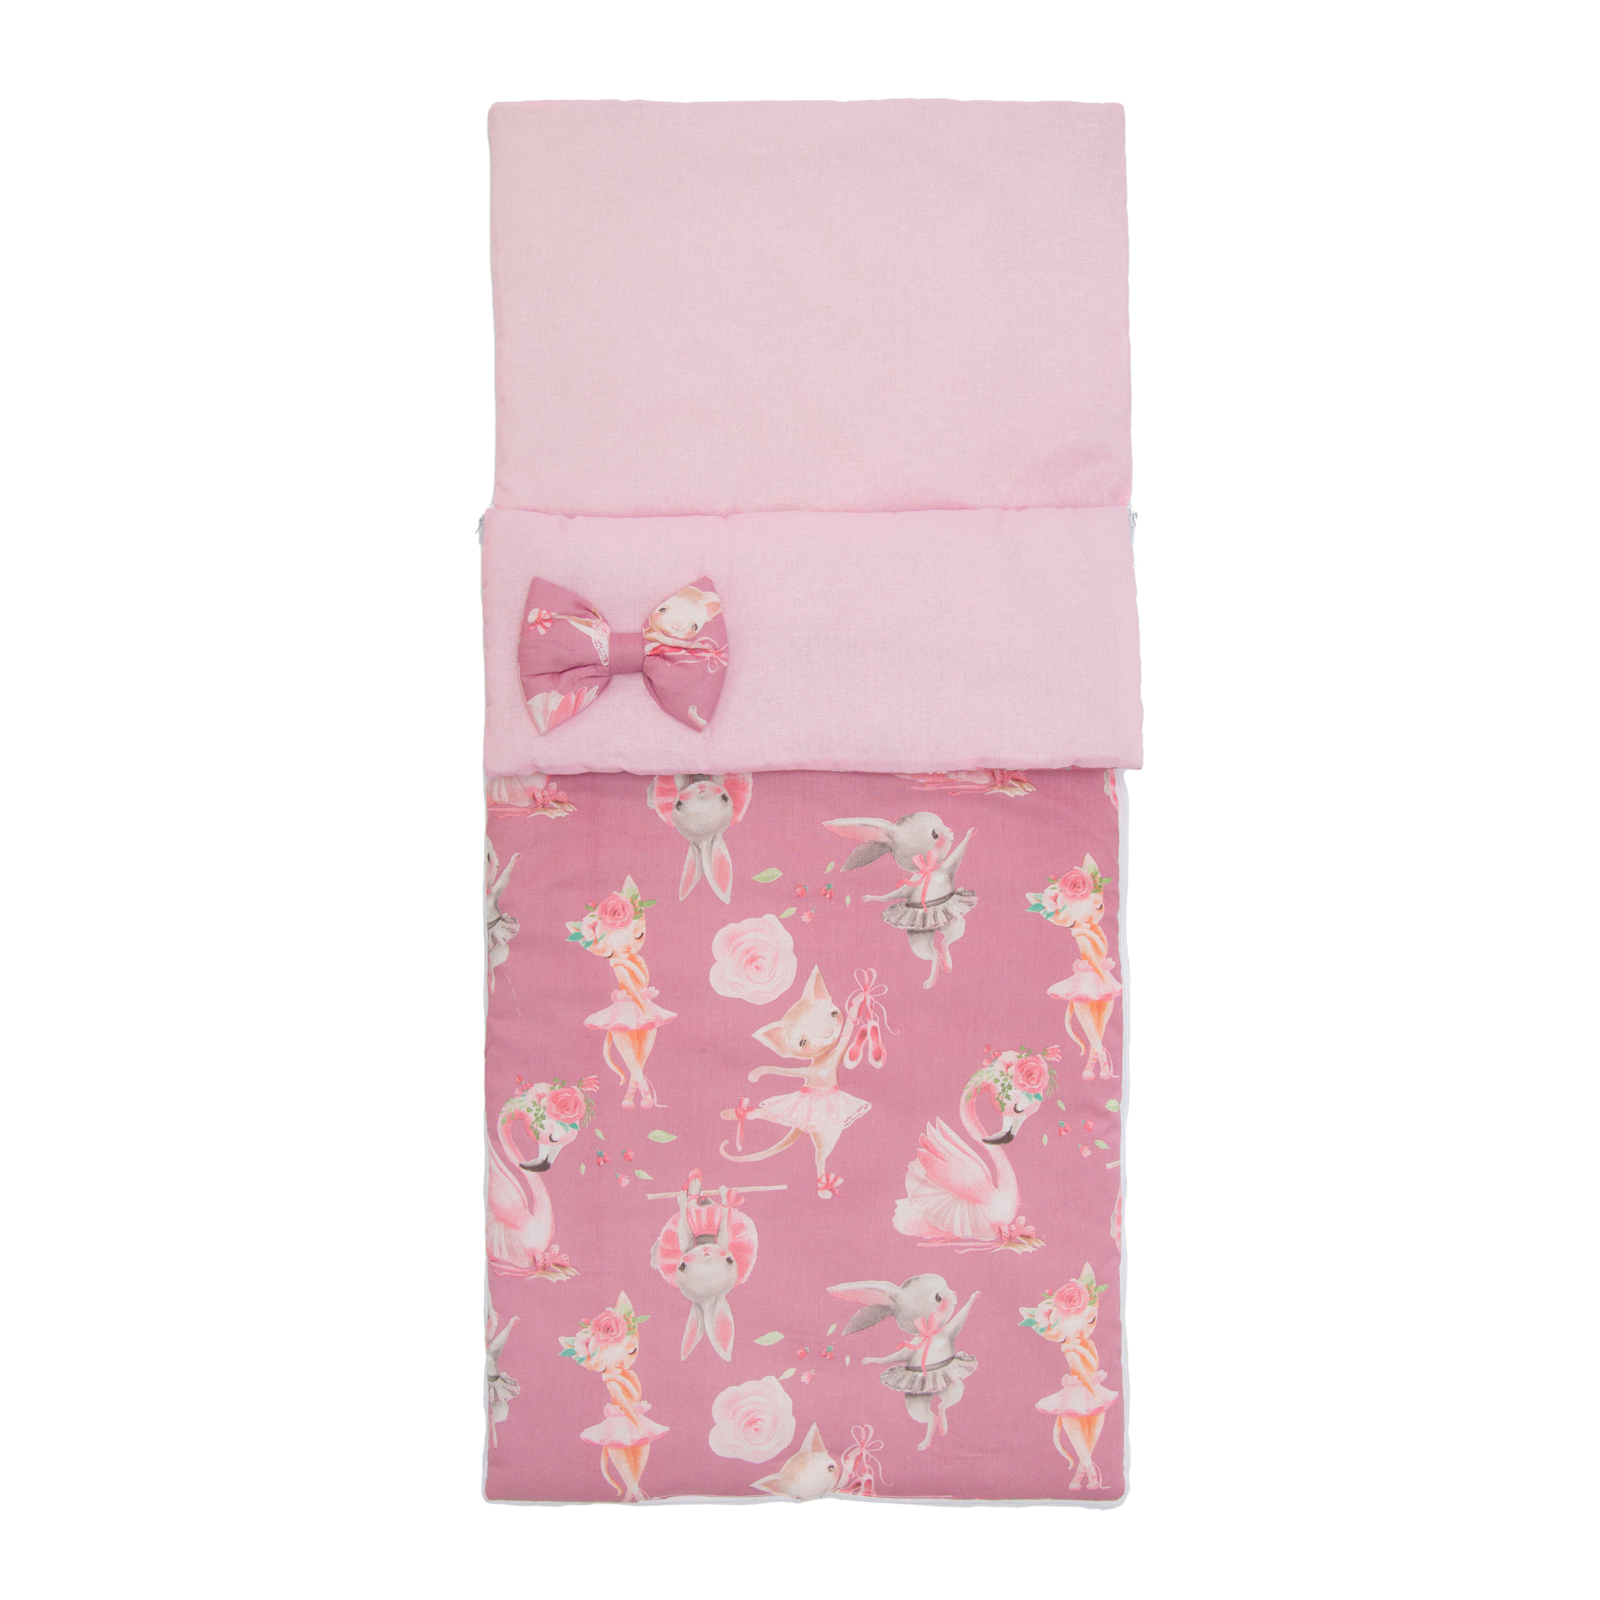 Спальный мешок Amarobaby Magic Sleep Нежный Танец розовый спальный конверт amarobaby мешок magic sleep крошка ежик